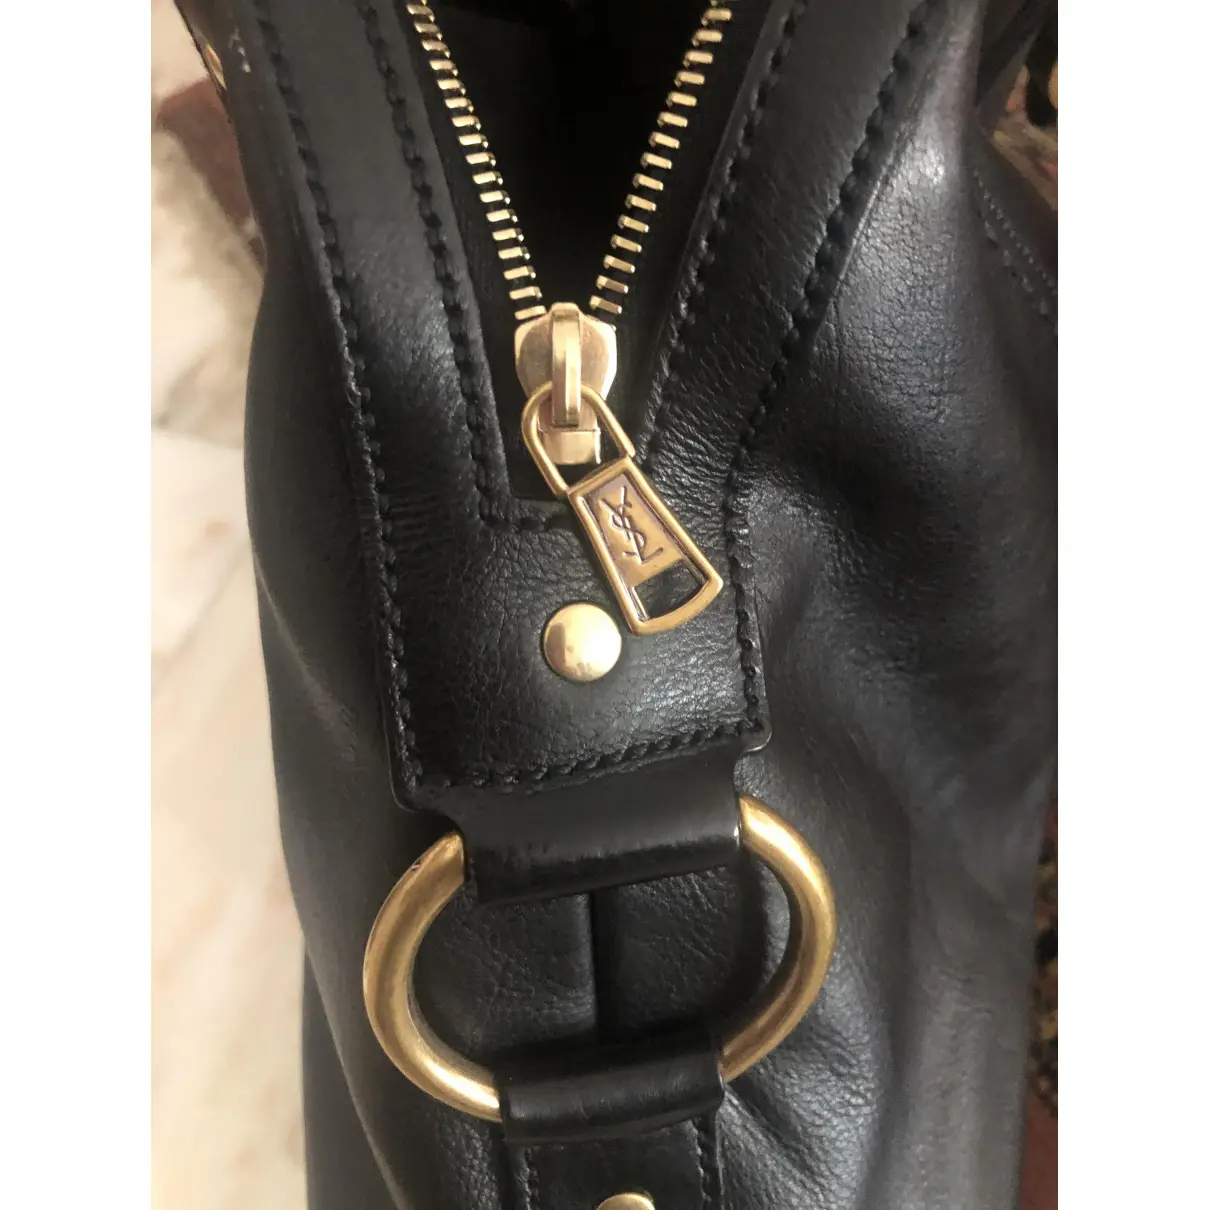 Muse leather handbag Yves Saint Laurent - Vintage